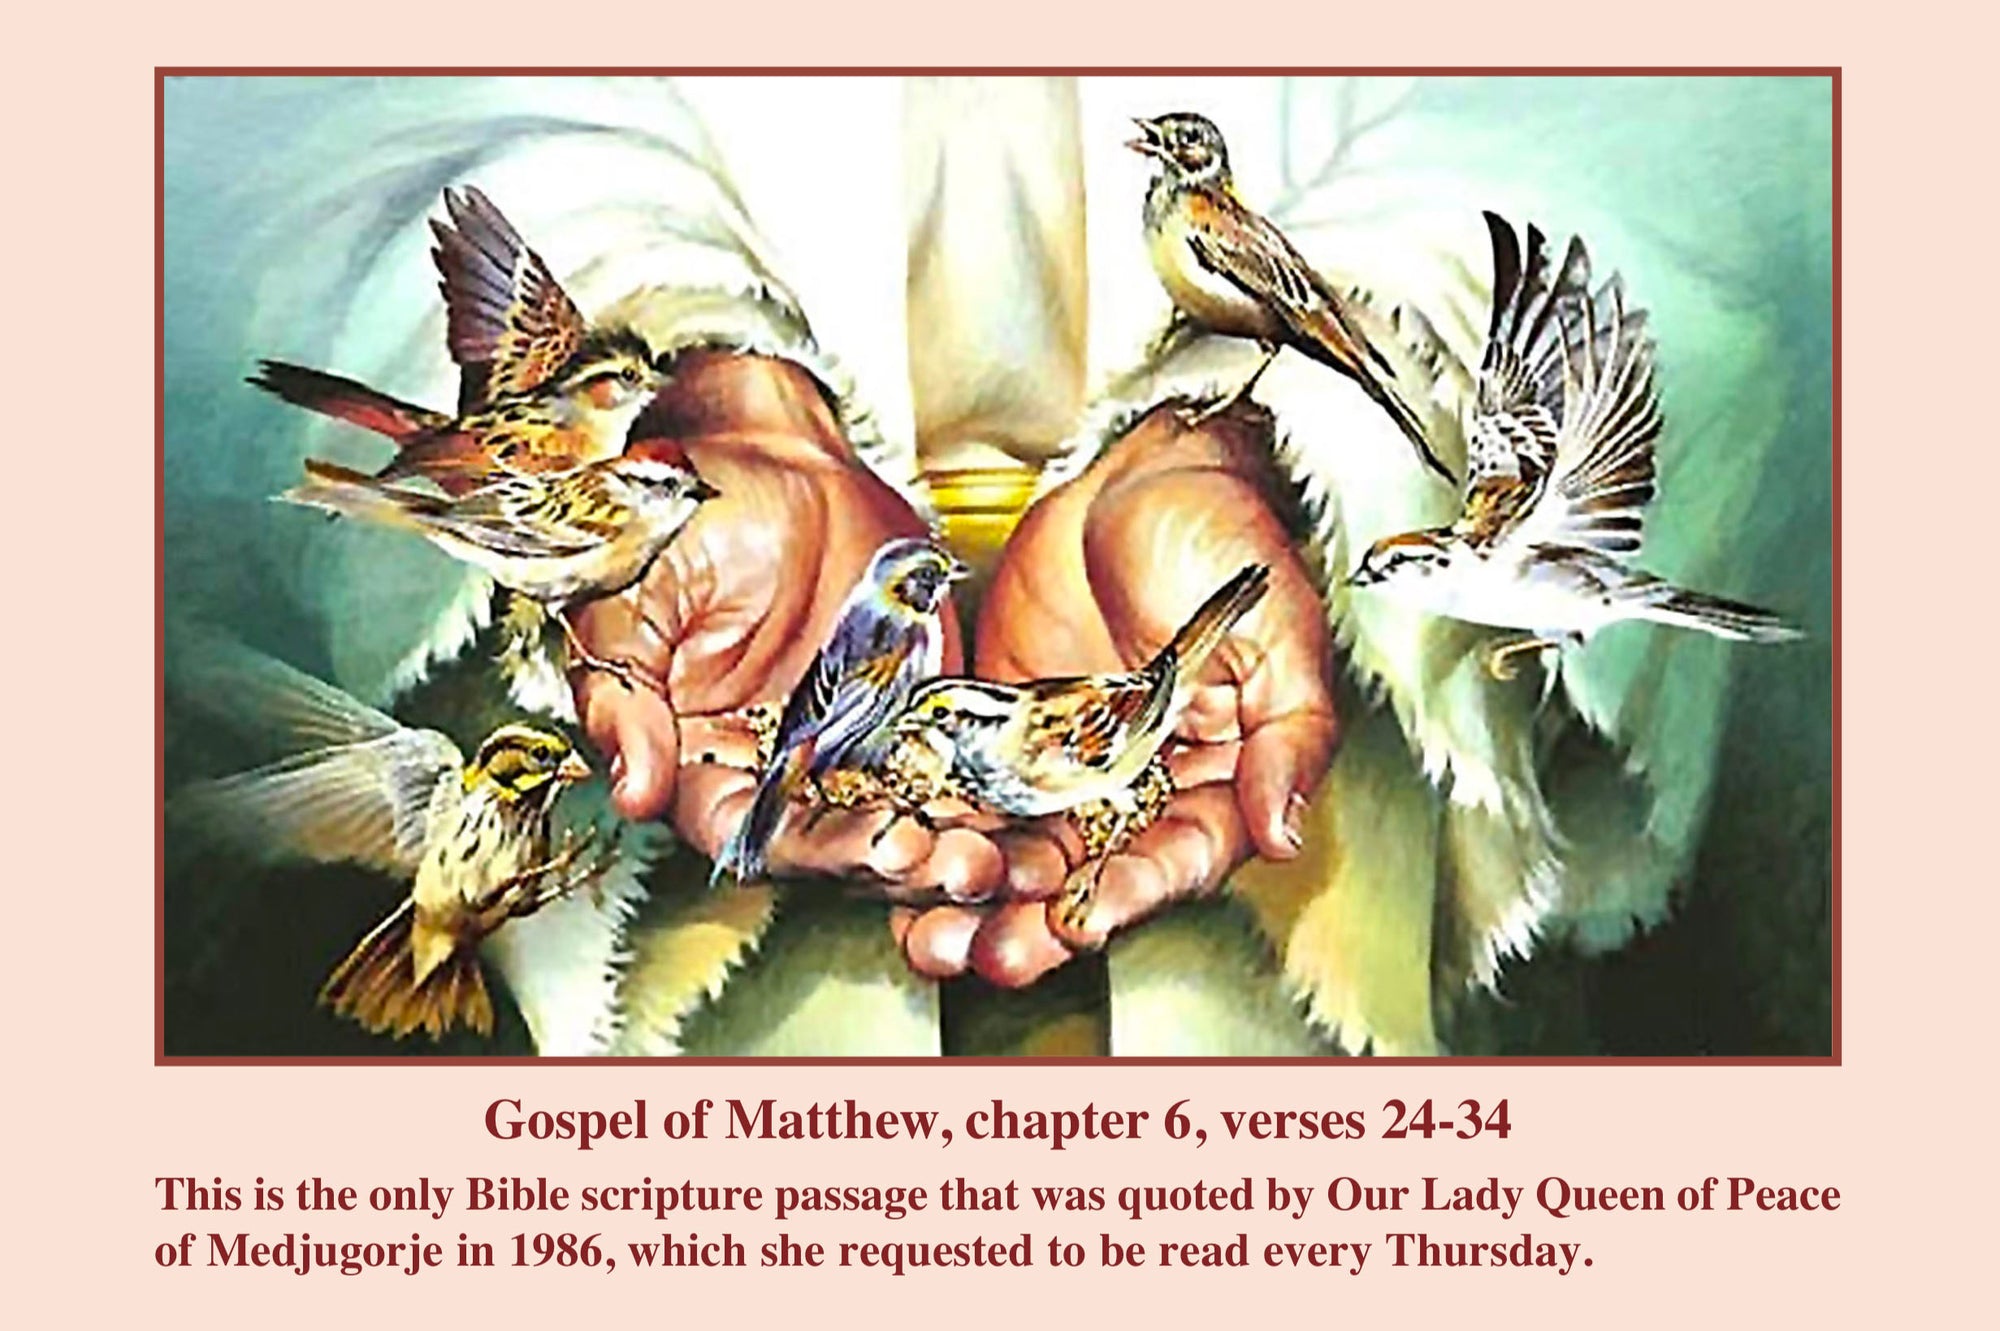 Bible Passage “Do Not Worry” - Gospel of Matthew, Chapter 6